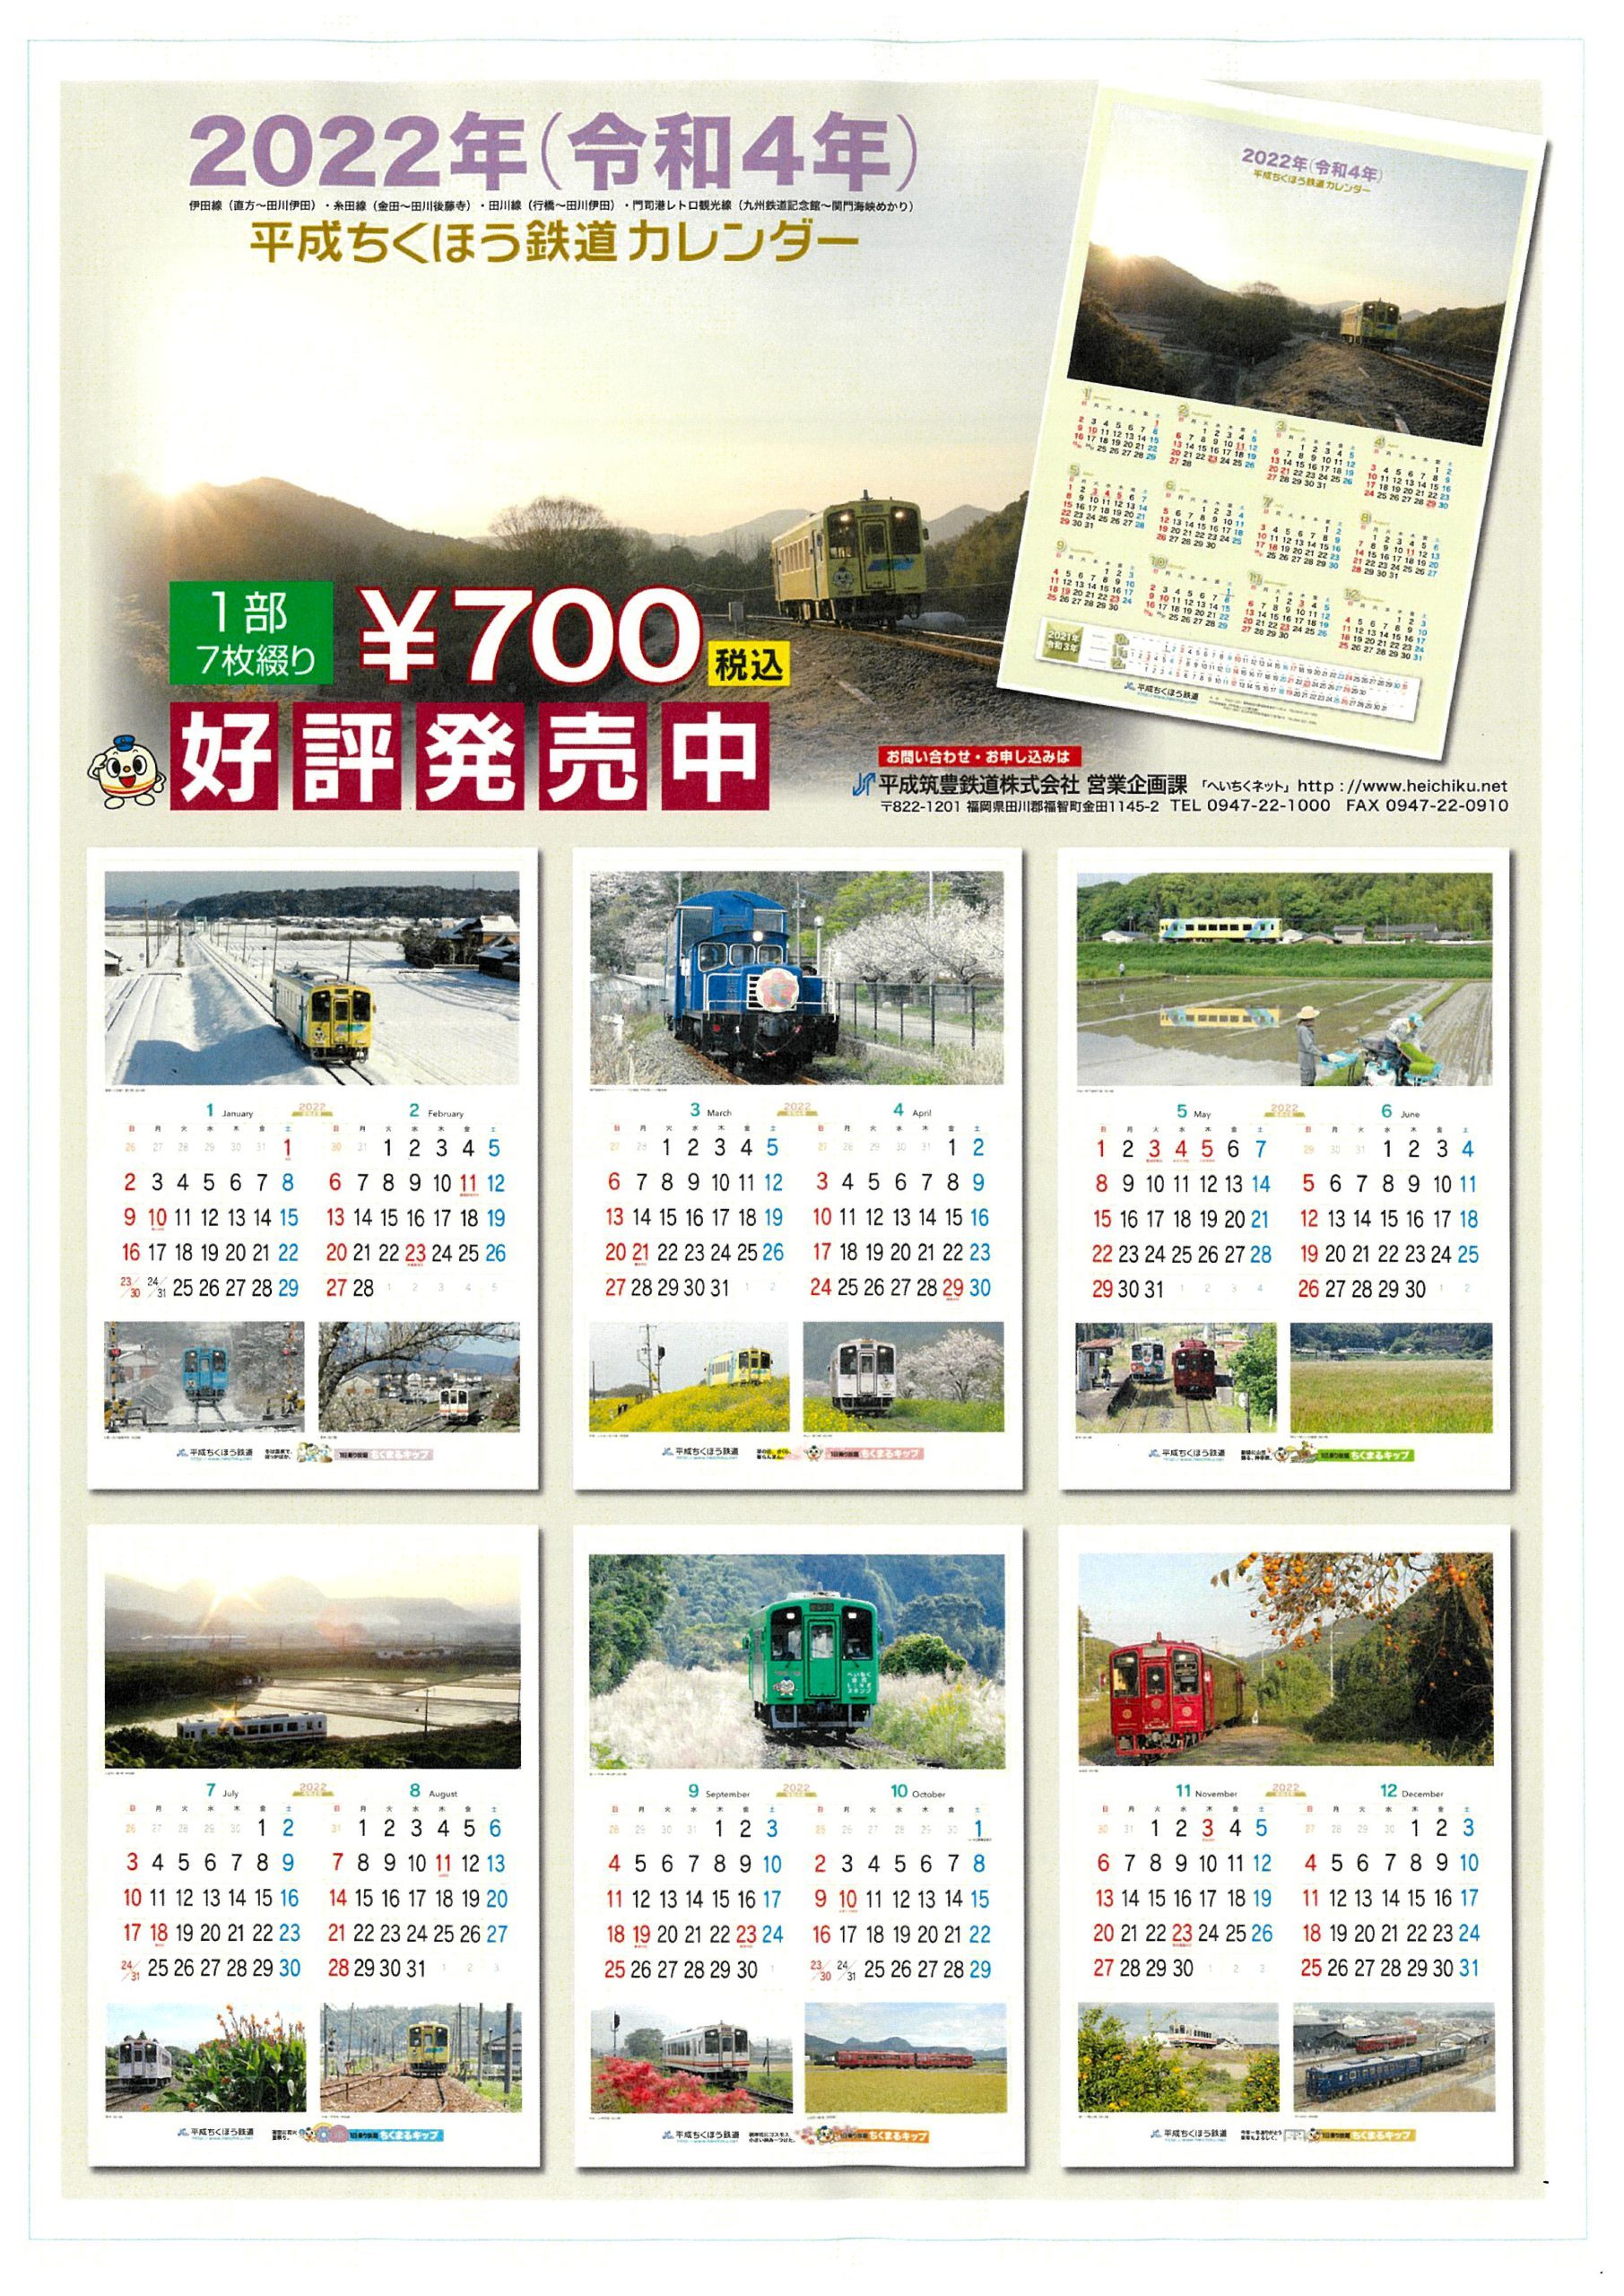 平成筑豊鉄道 22年カレンダー 販売 21年10月4日 鉄道コム